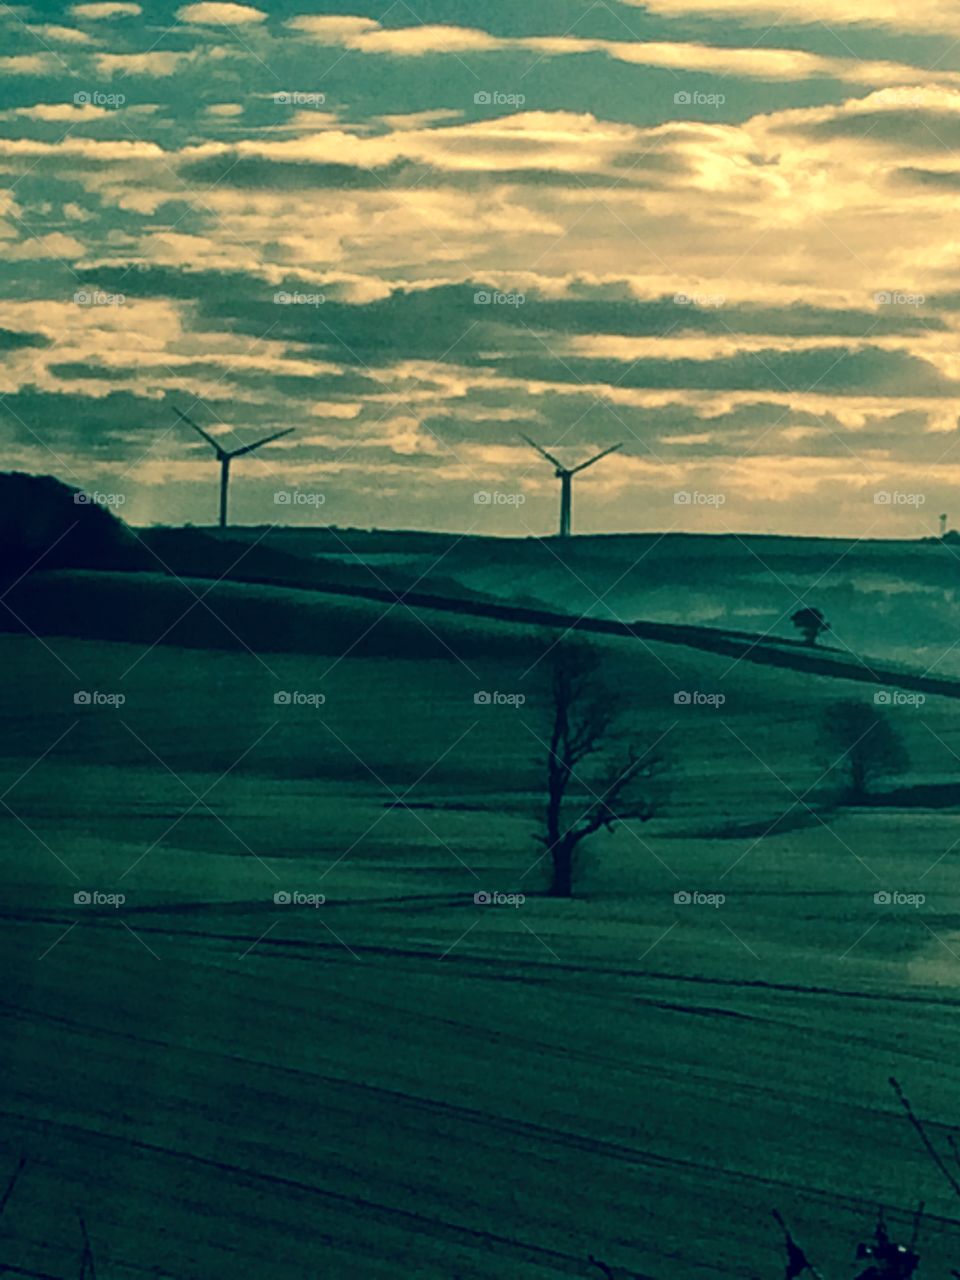 Cornish windmills